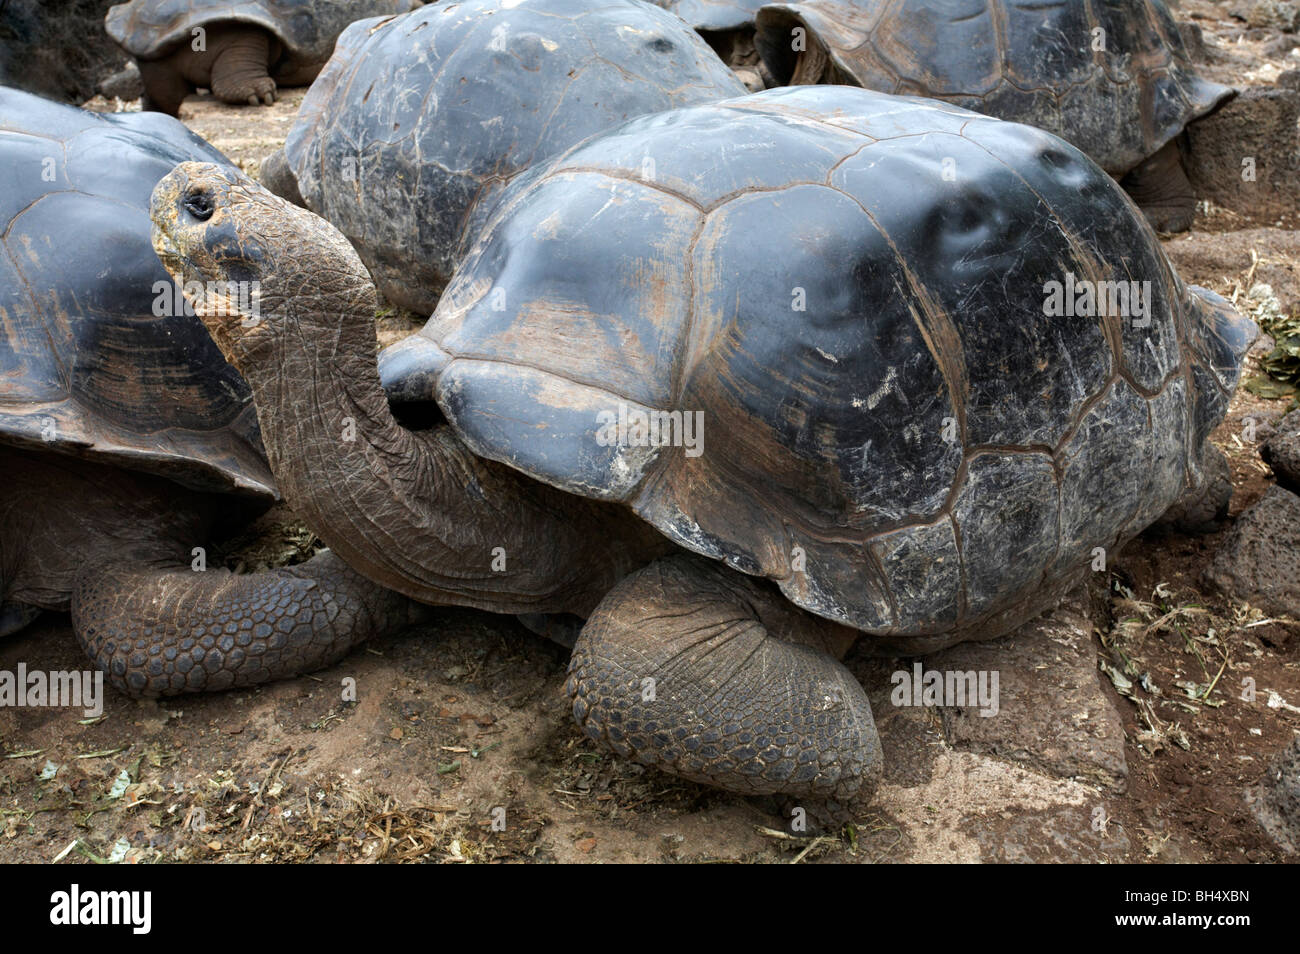 Les tortues géantes des Galapagos (Geochelone spp.) au Centre de recherche Charles Darwin, Puerto Ayora, l'île de Santa Cruz. Banque D'Images